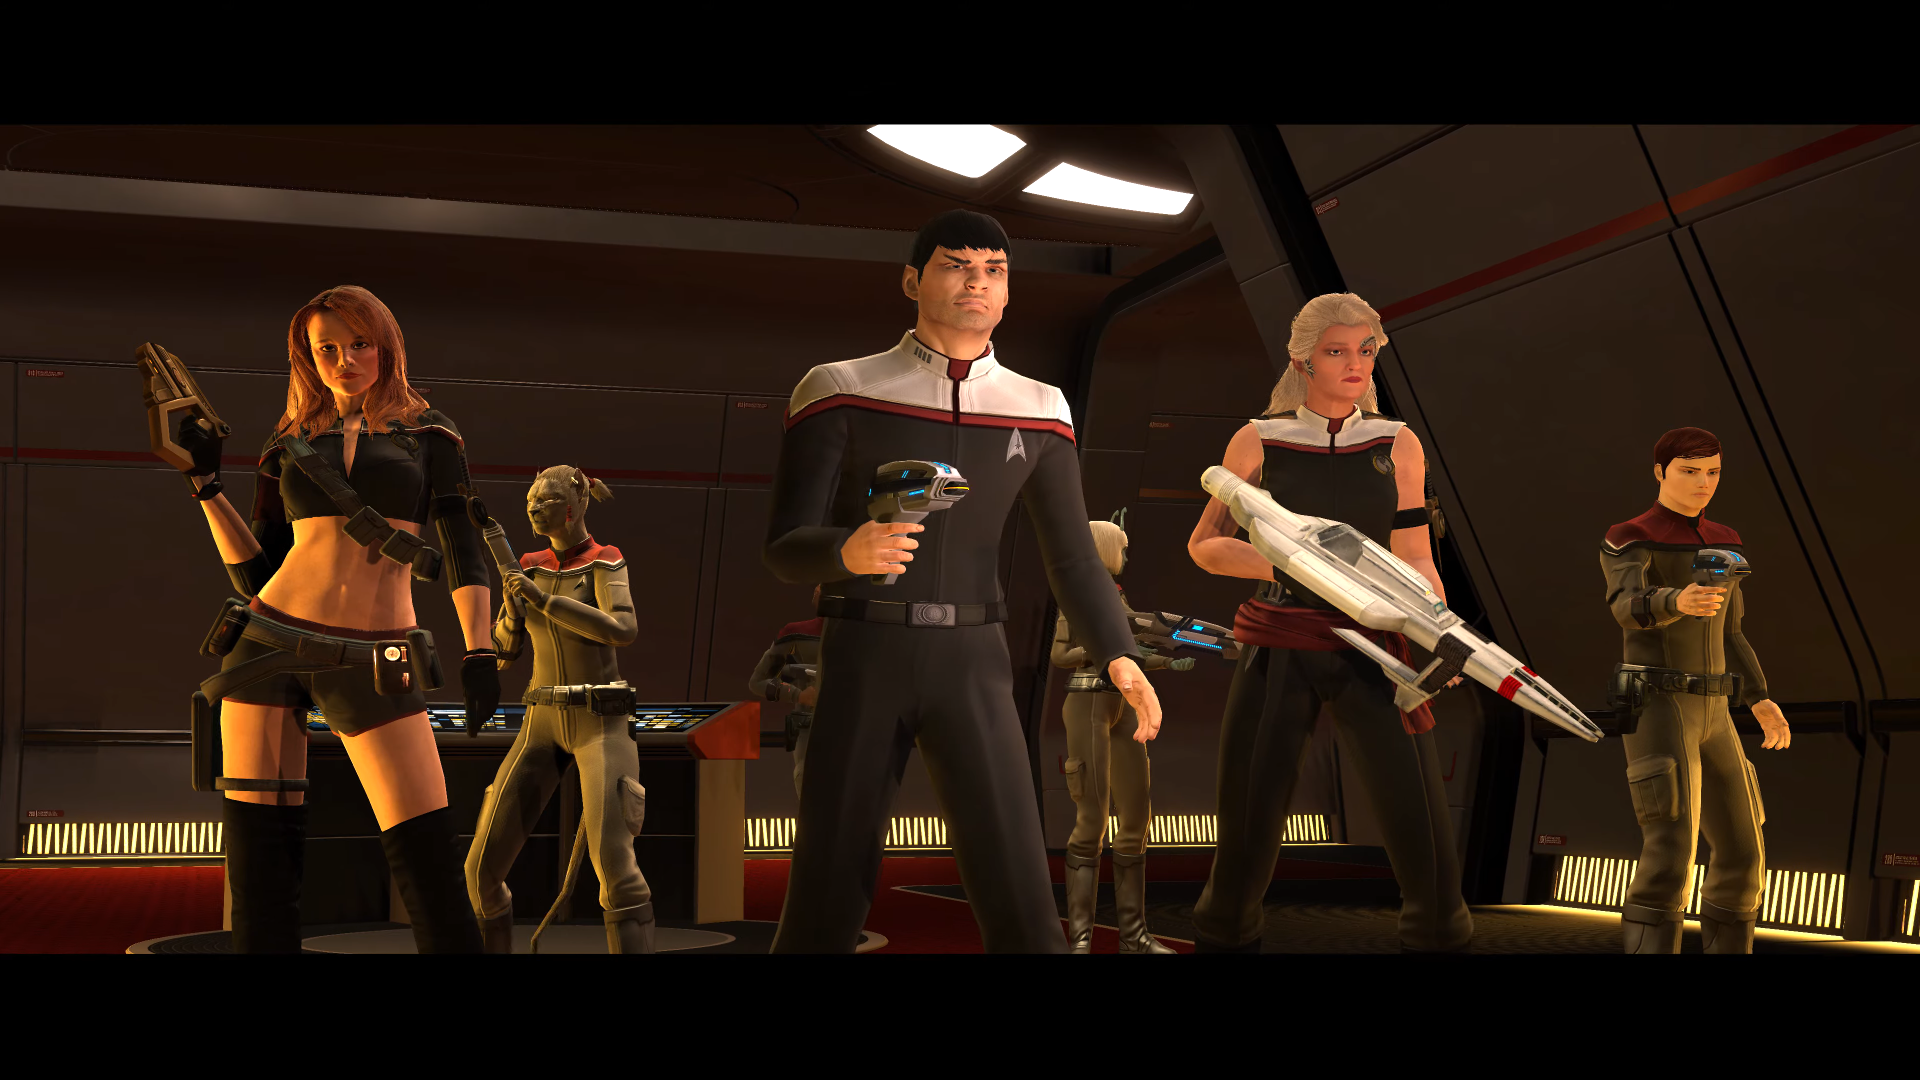 Nowy sezon Stormfall w Star Trek Online wystartuje w przyszłym miesiącu